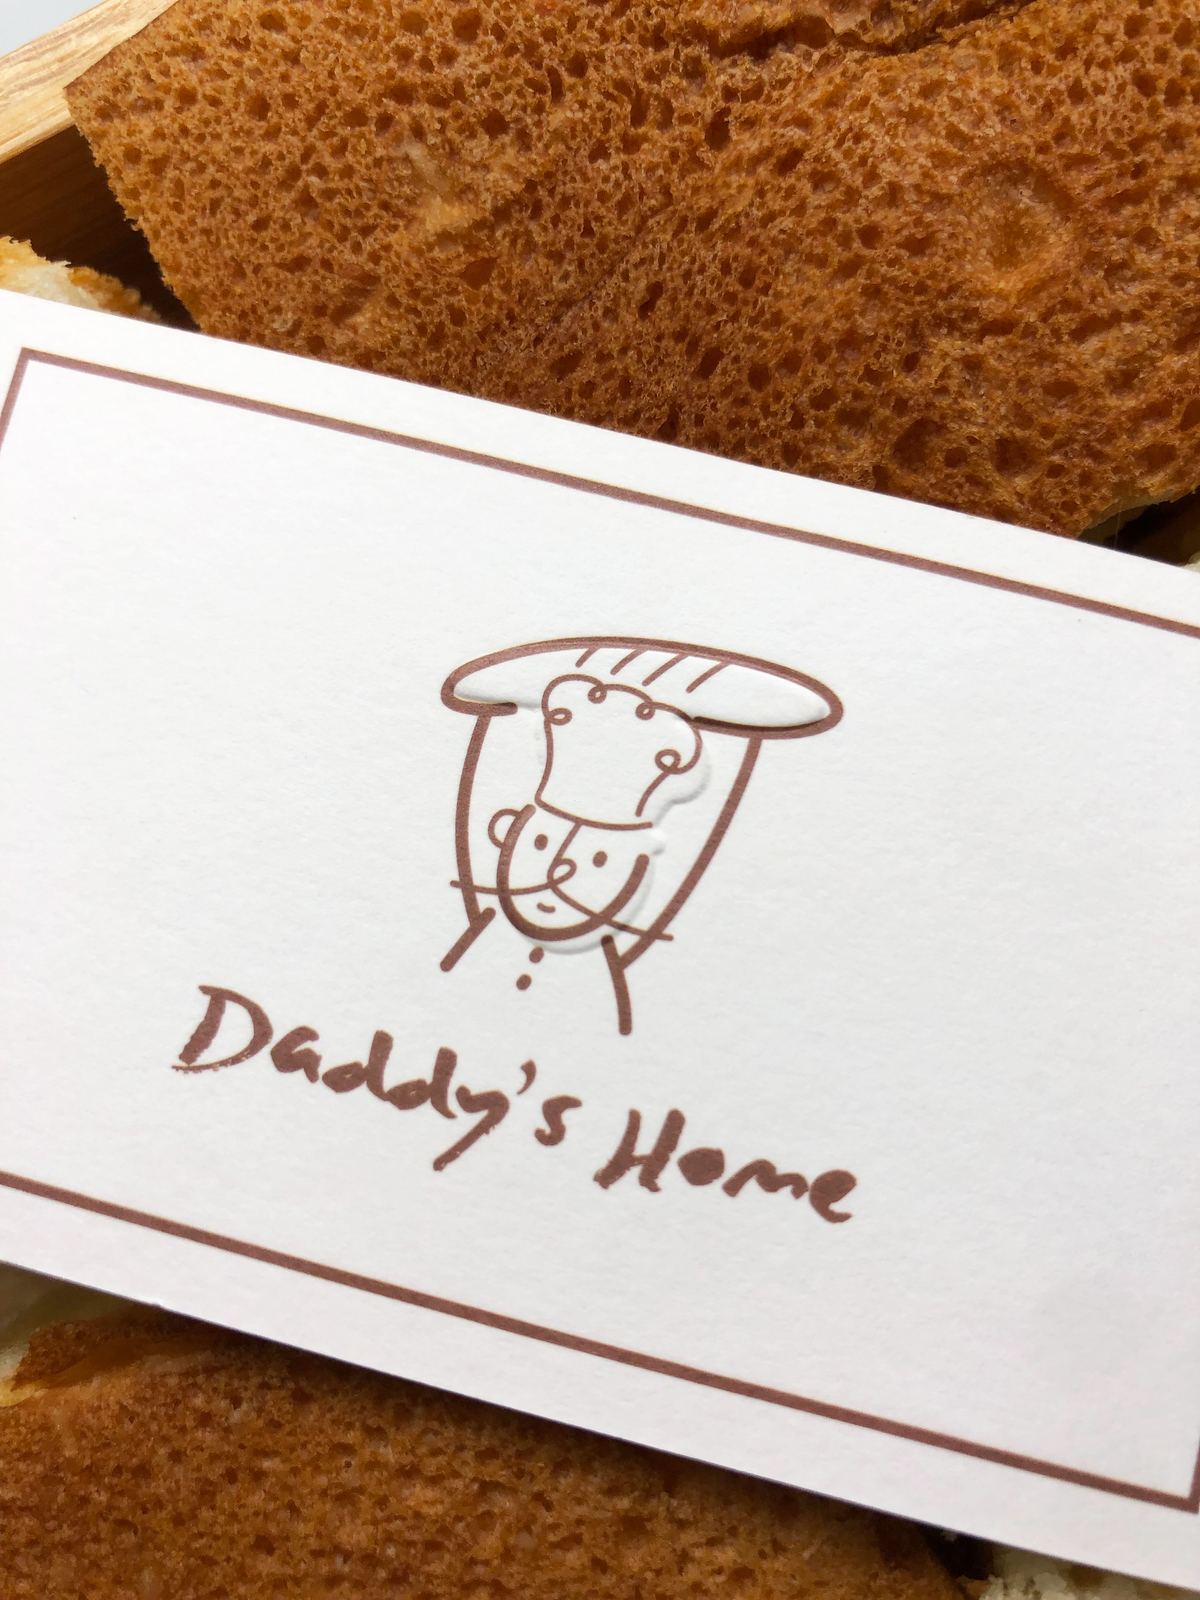 【名片打凸】Daddy's home 烘焙坊-3